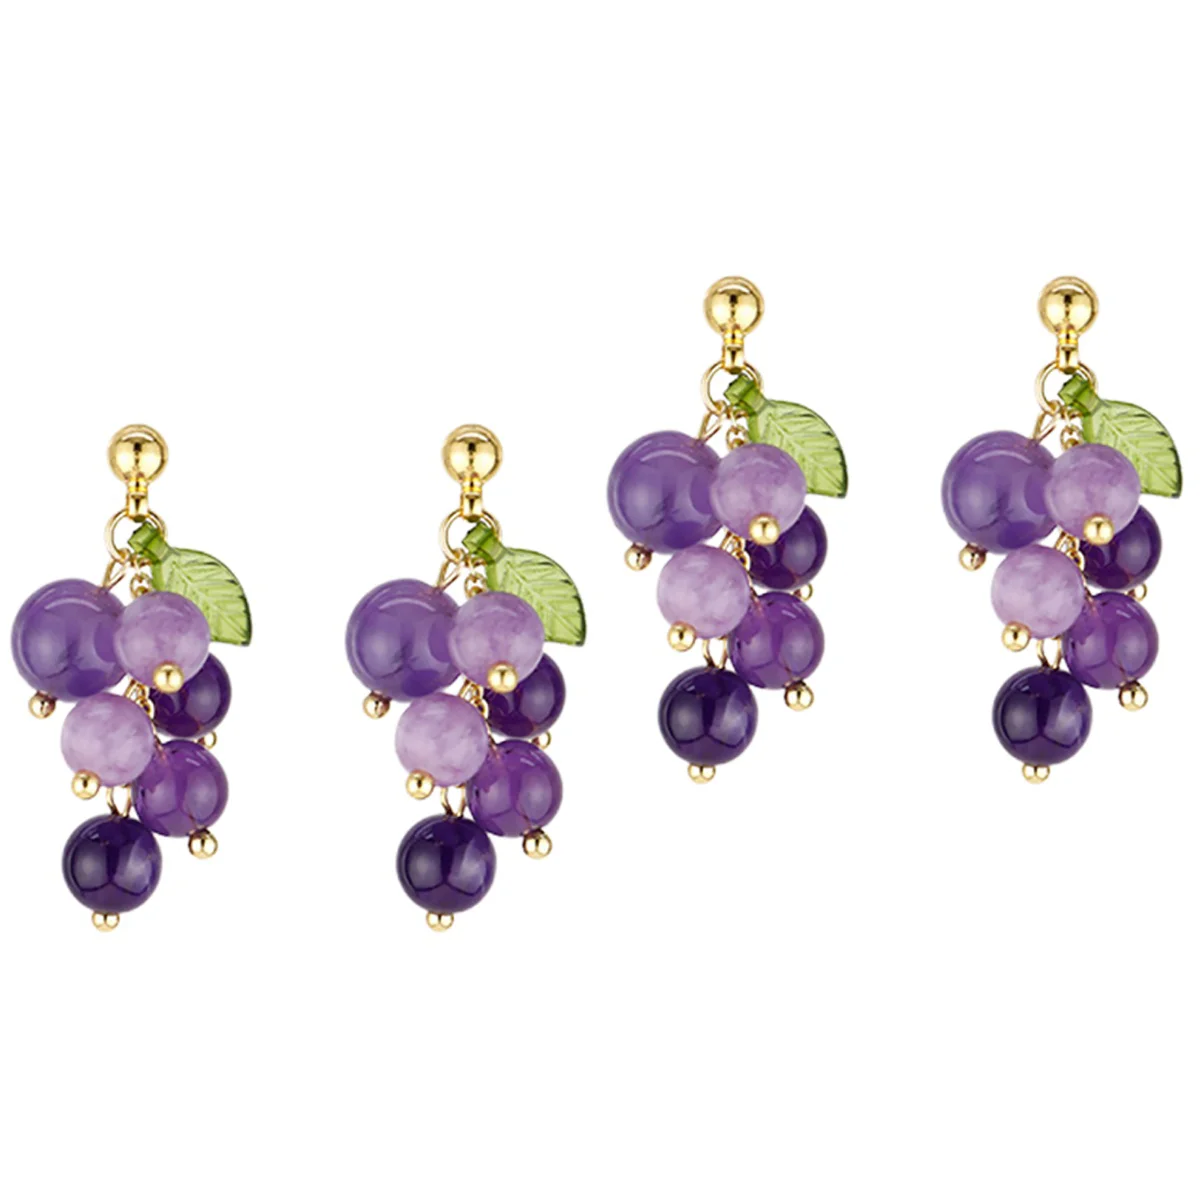 

2 Pairs Stud Earrings Grape Earrings Resin Earrings Fashionable Ear Jewelries for Women Girls